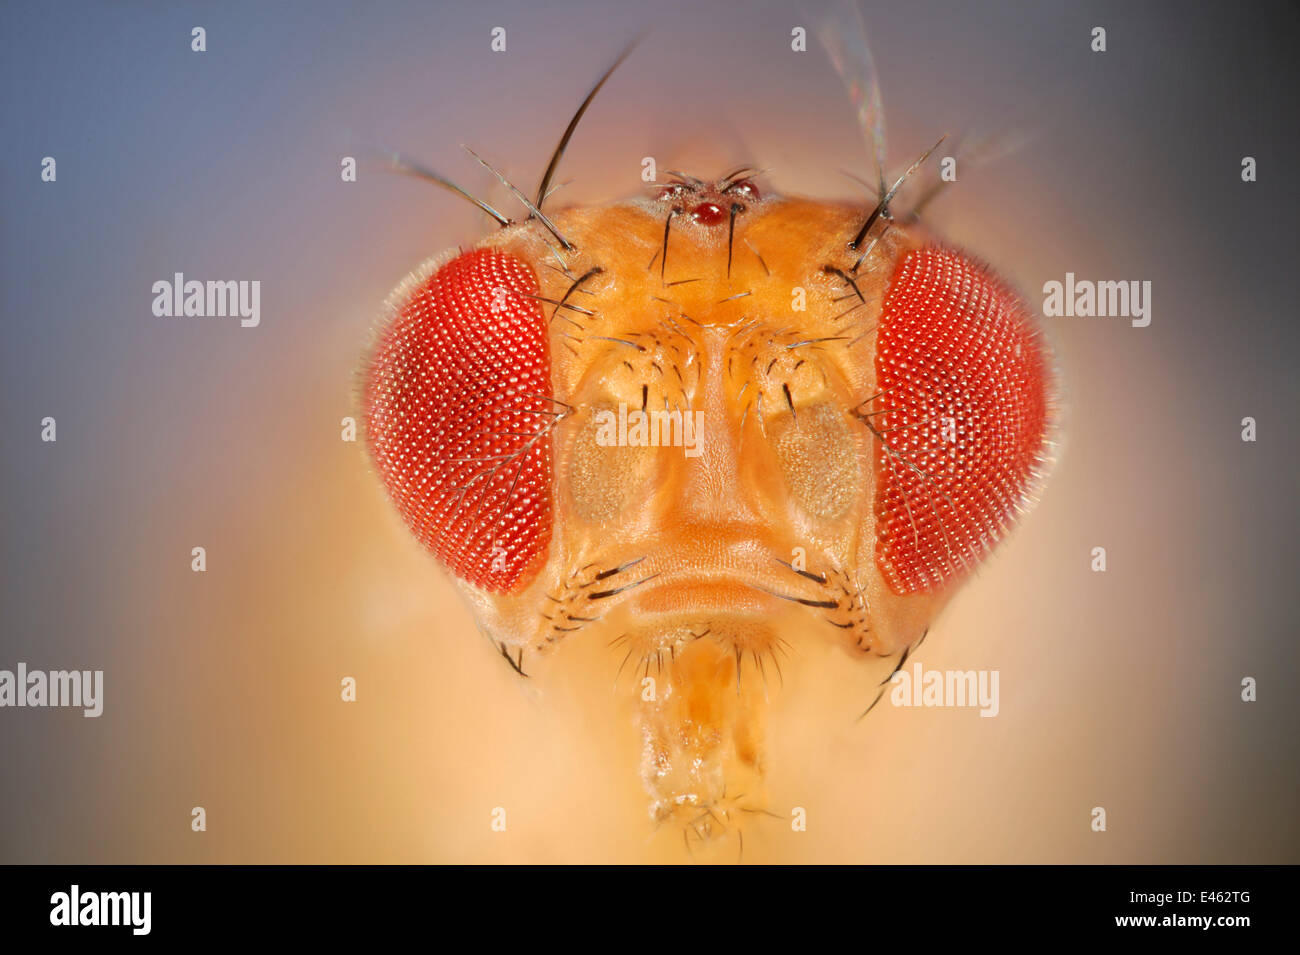 Commune sauvage mouche des fruits (Drosophila melanogaster) Drosophila Vienne Centre de RNAi, Institut de Pathologie Moléculaire, Autriche [FOCUS] d'empilage Banque D'Images